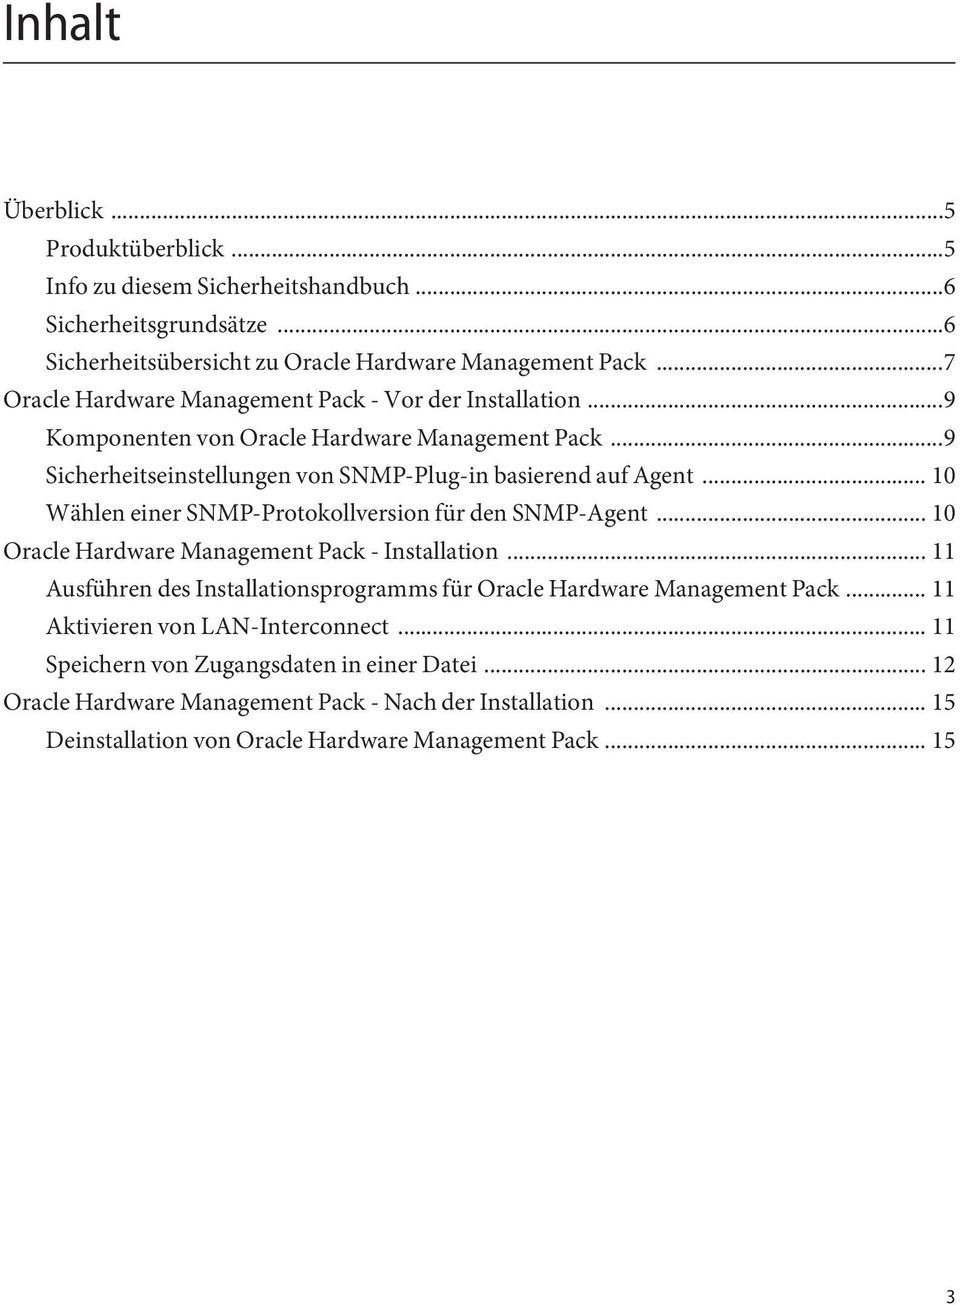 .. 10 Wählen einer SNMP-Protokollversion für den SNMP-Agent... 10 Oracle Hardware Management Pack - Installation.